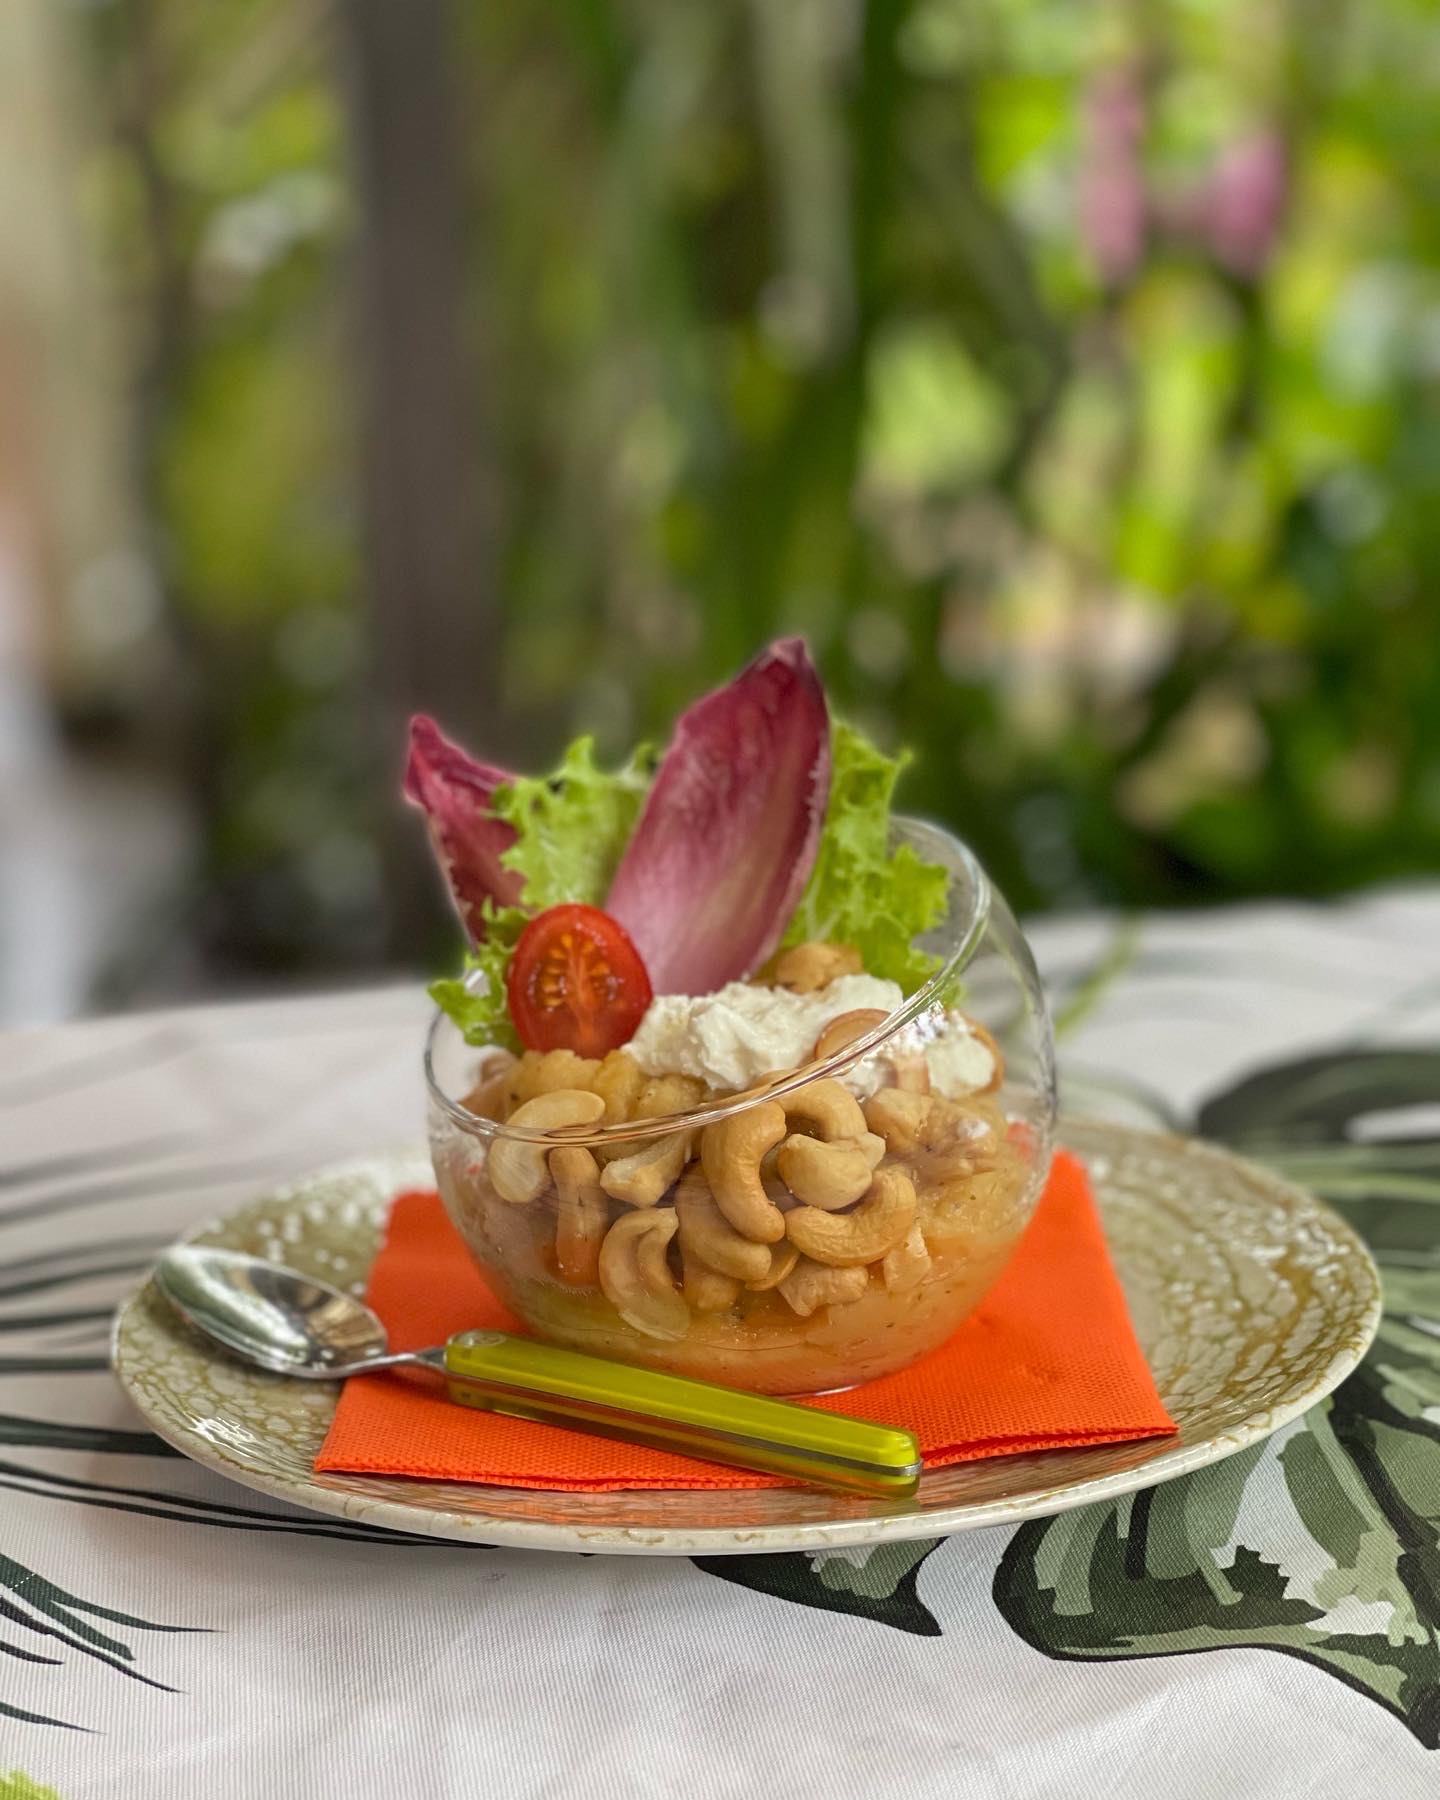 Dahl lentilles corail au gingembre recette cheffe restaurant le jardin des envies martinique